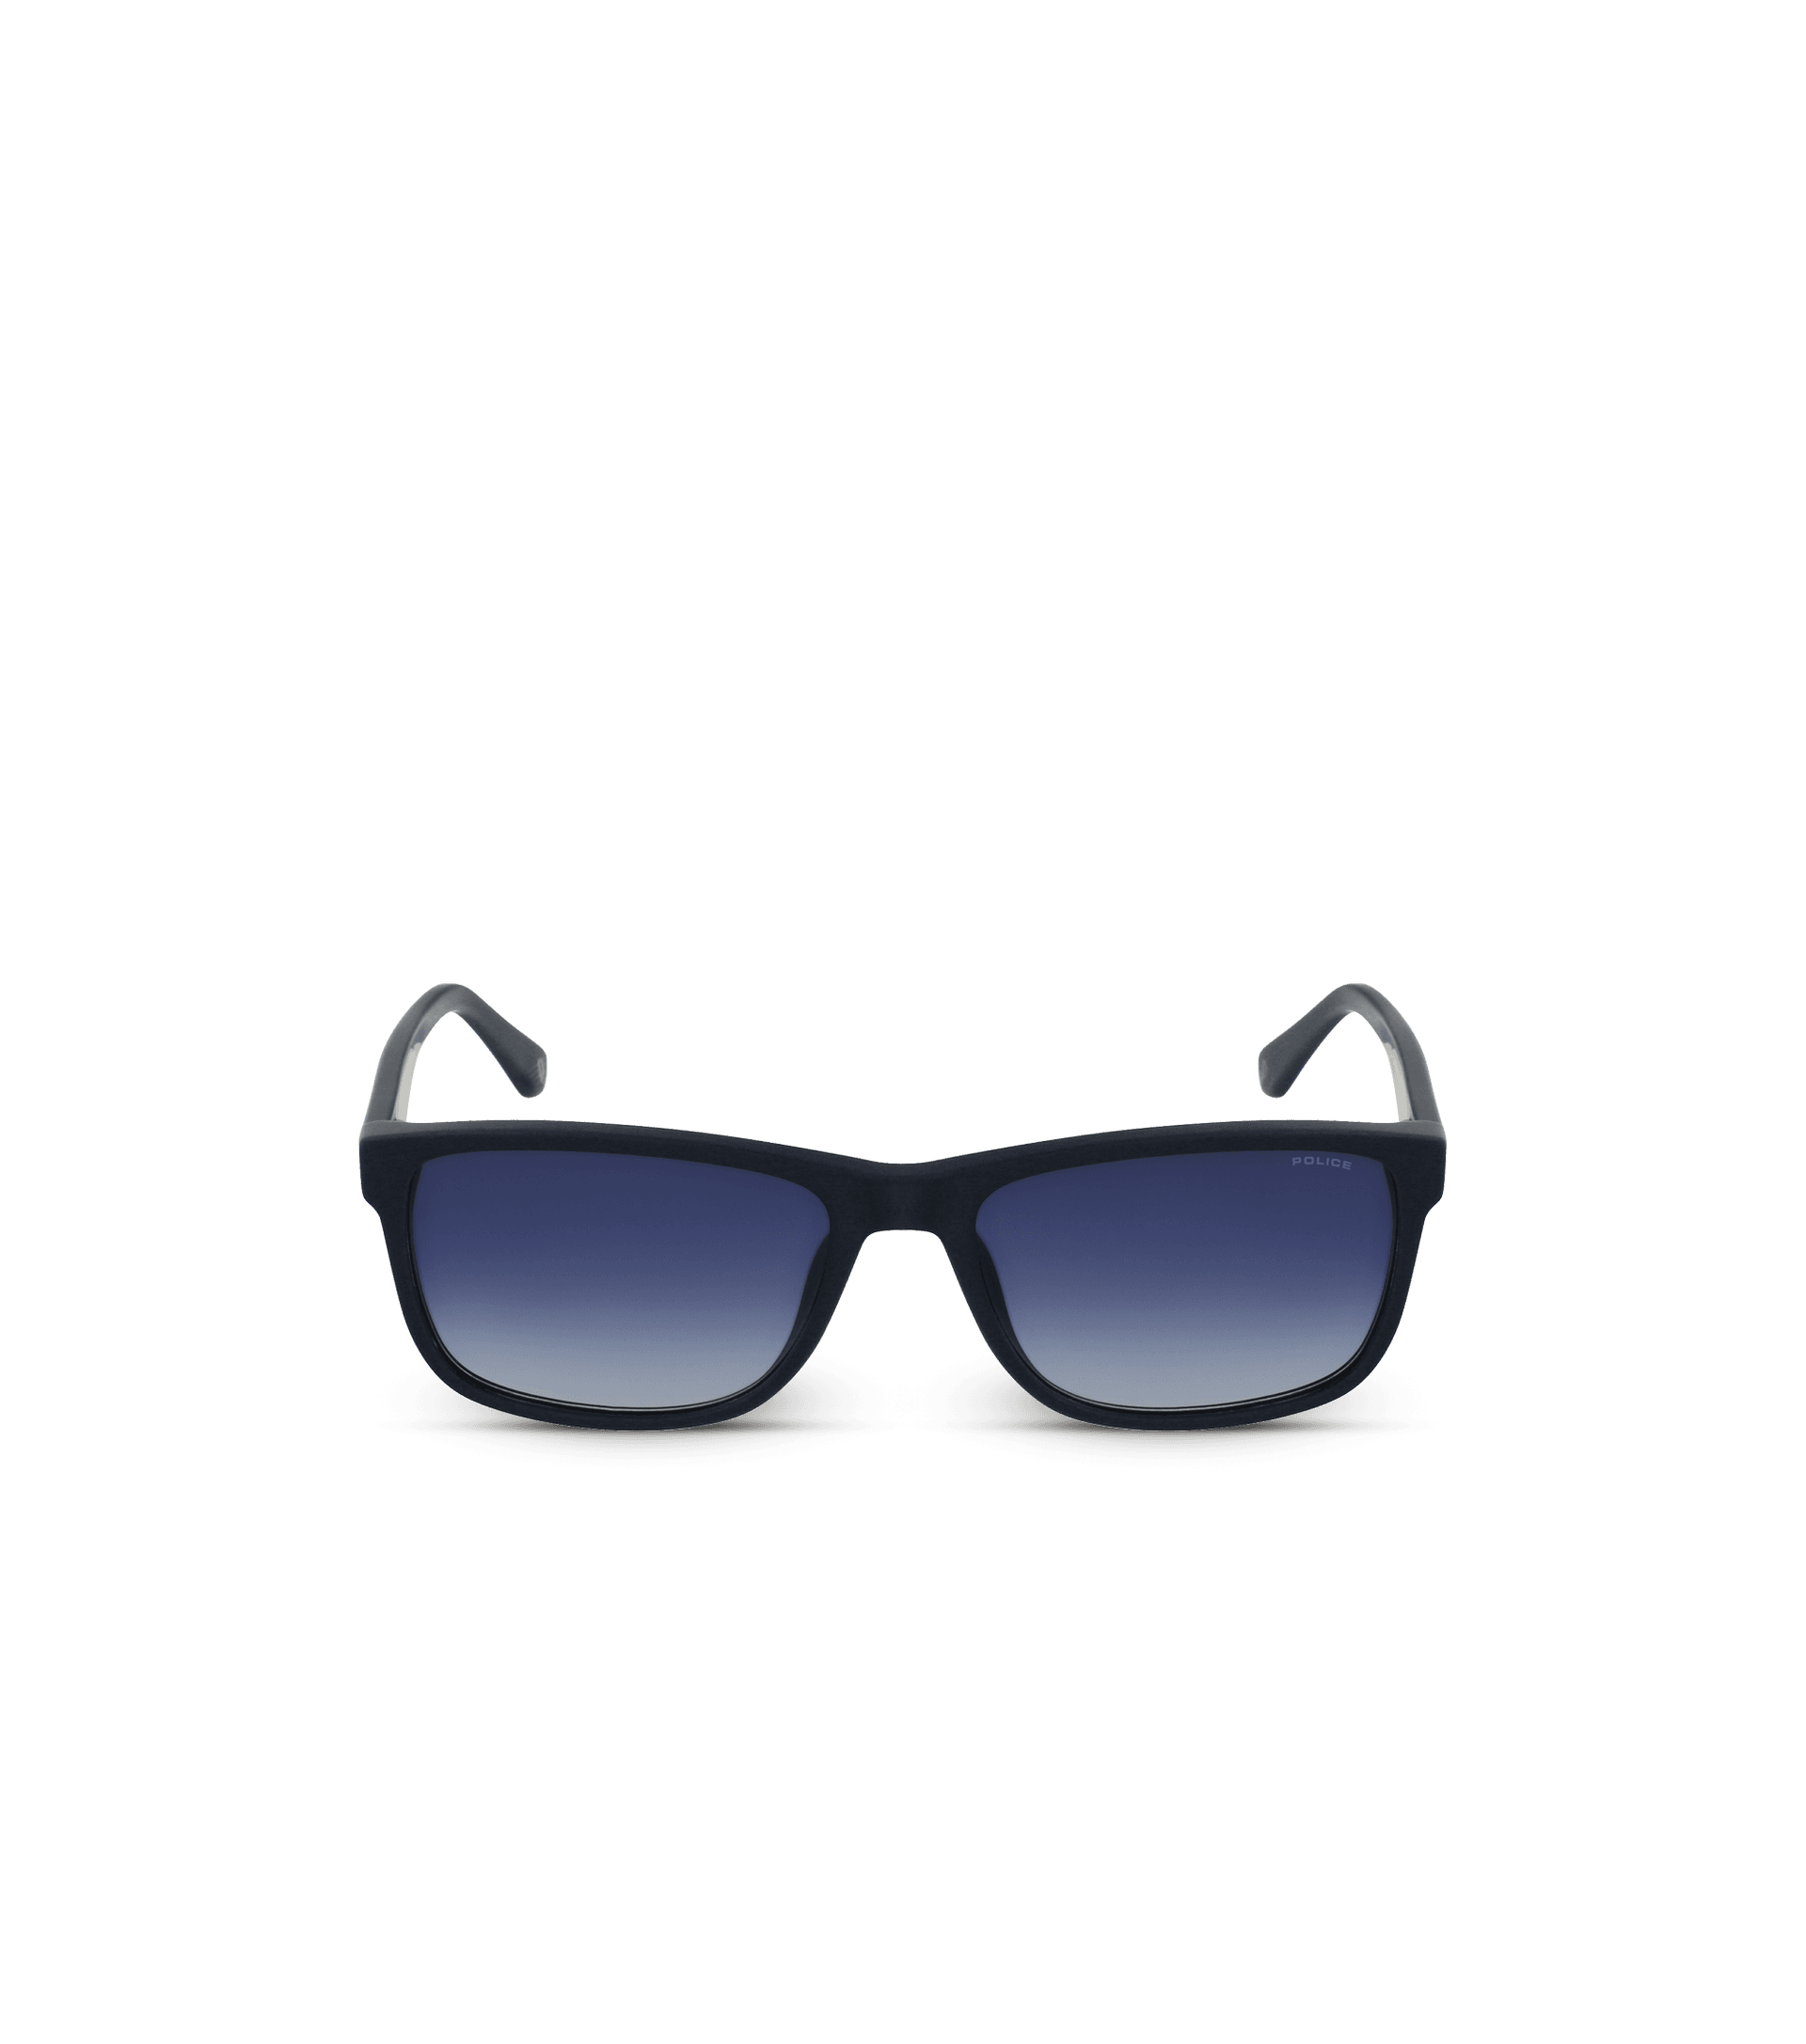 Police sunglasses - Arcade 2 Gafas de de caballero Police SPLB40 Negro, Gradiente de humo